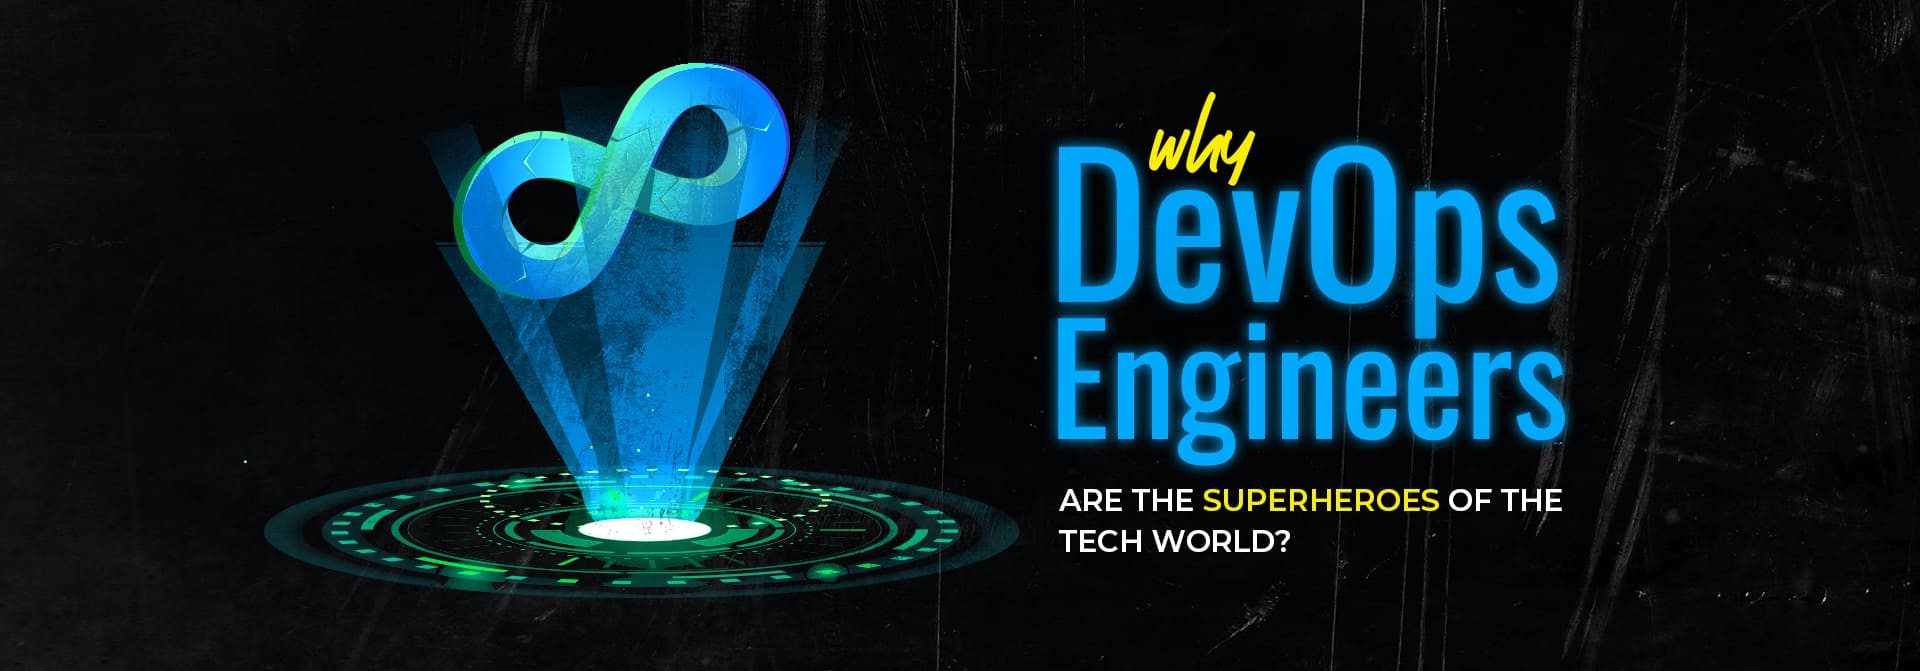 why devOps engineers